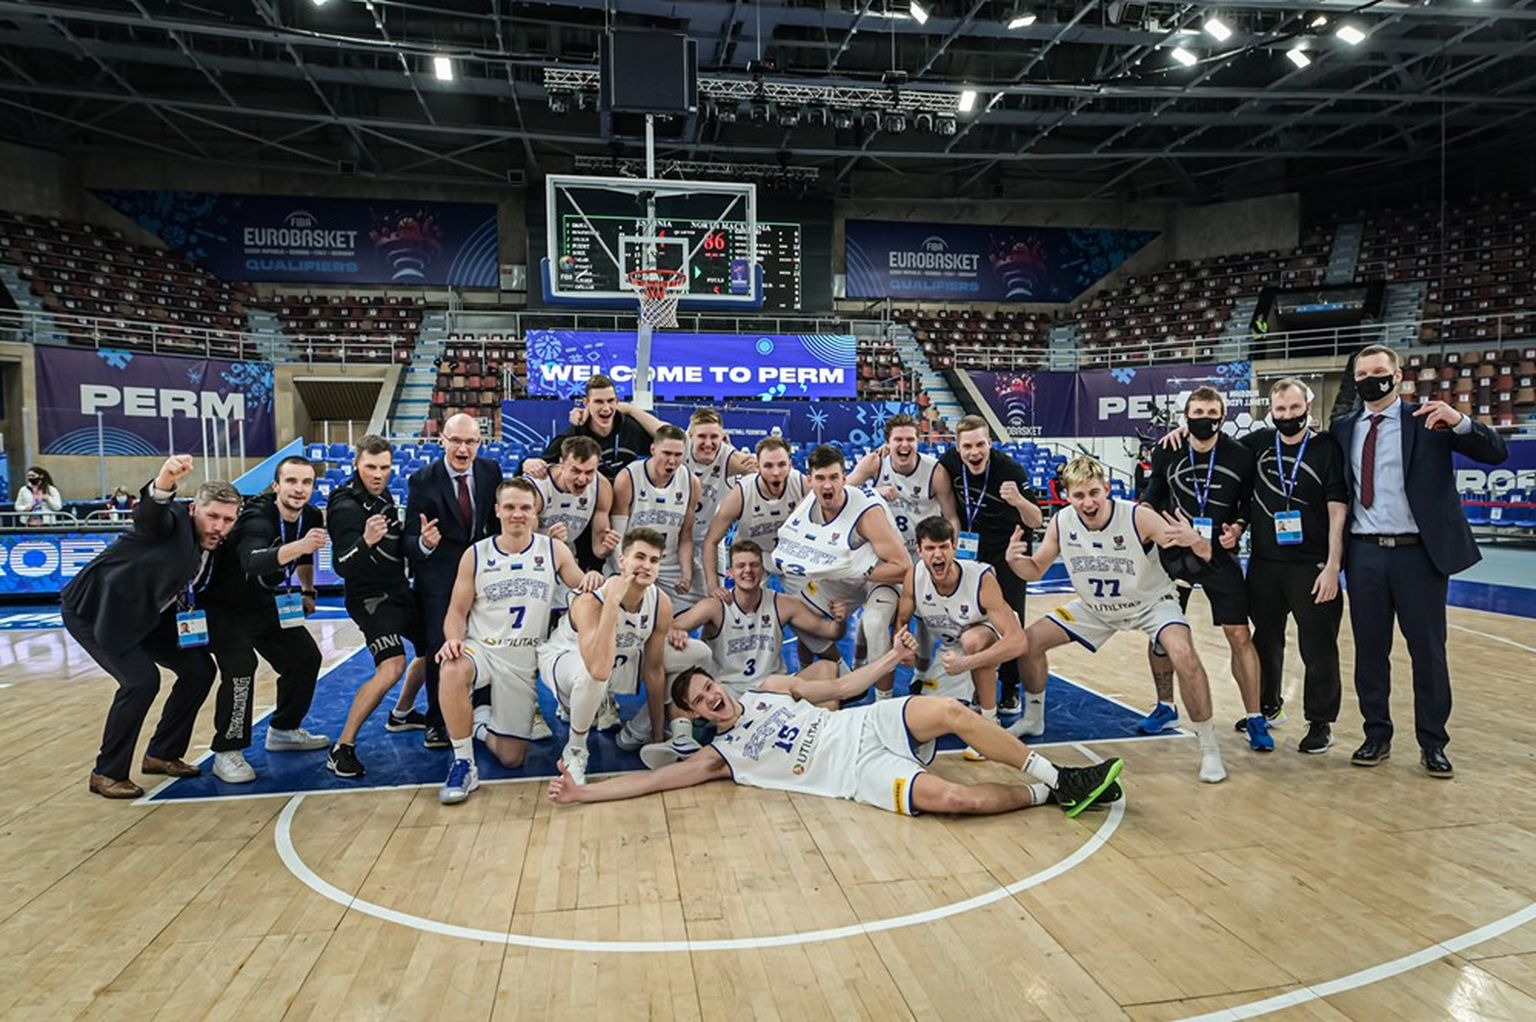 Nii rõõmustas Eesti korvpallikoondis veebruarikuus Permis finaalturniirile jõudmise üle.